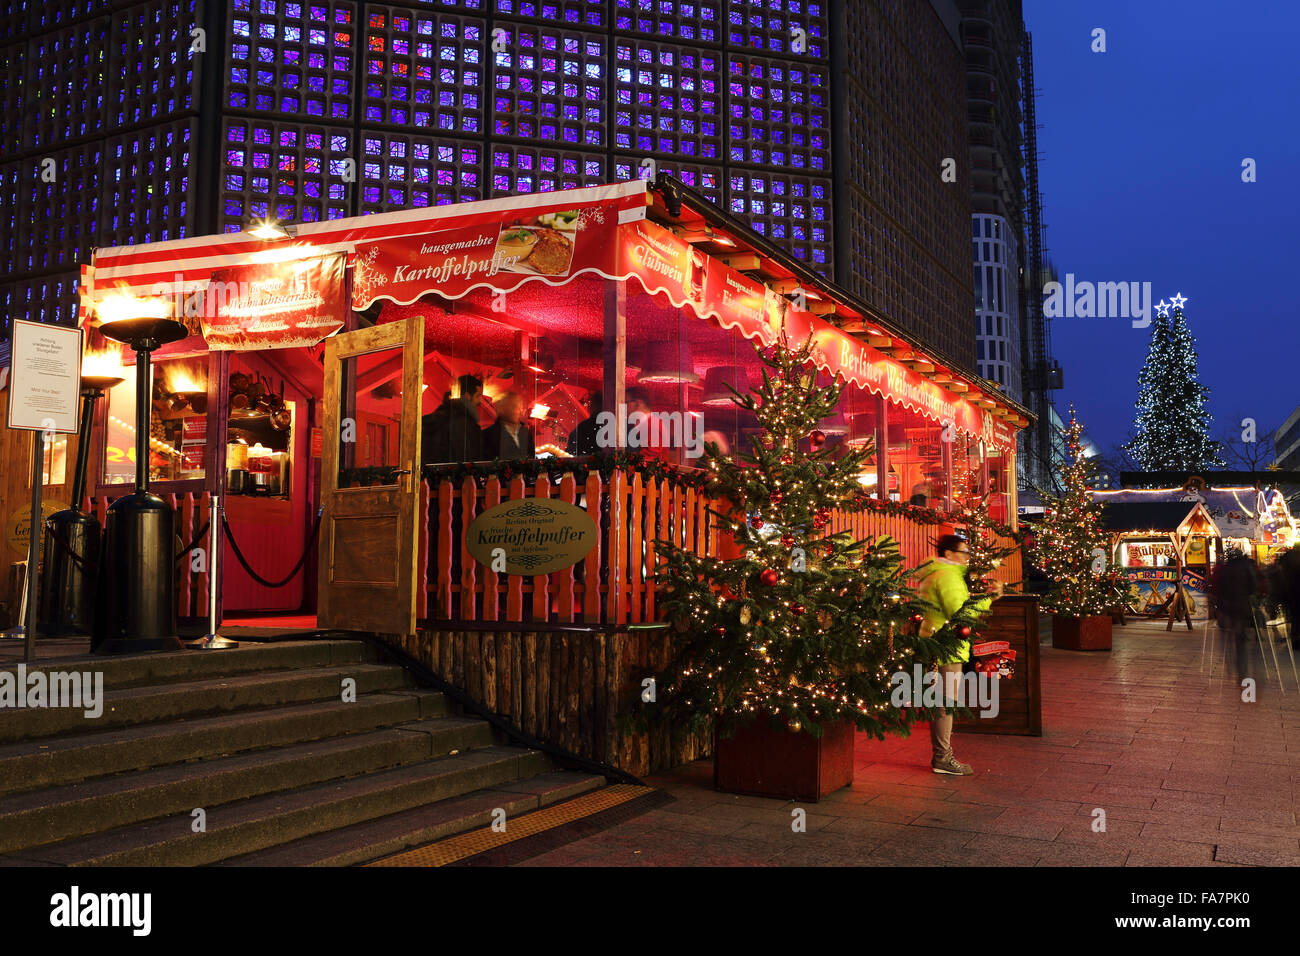 Ein überdachten Essen und trinken Stand auf der Stadt-Weihnachtsmarkt bin Gedachtniskirche Weihnachtsmarkt am Ku'damm in Berlin, Deutschland. Stockfoto